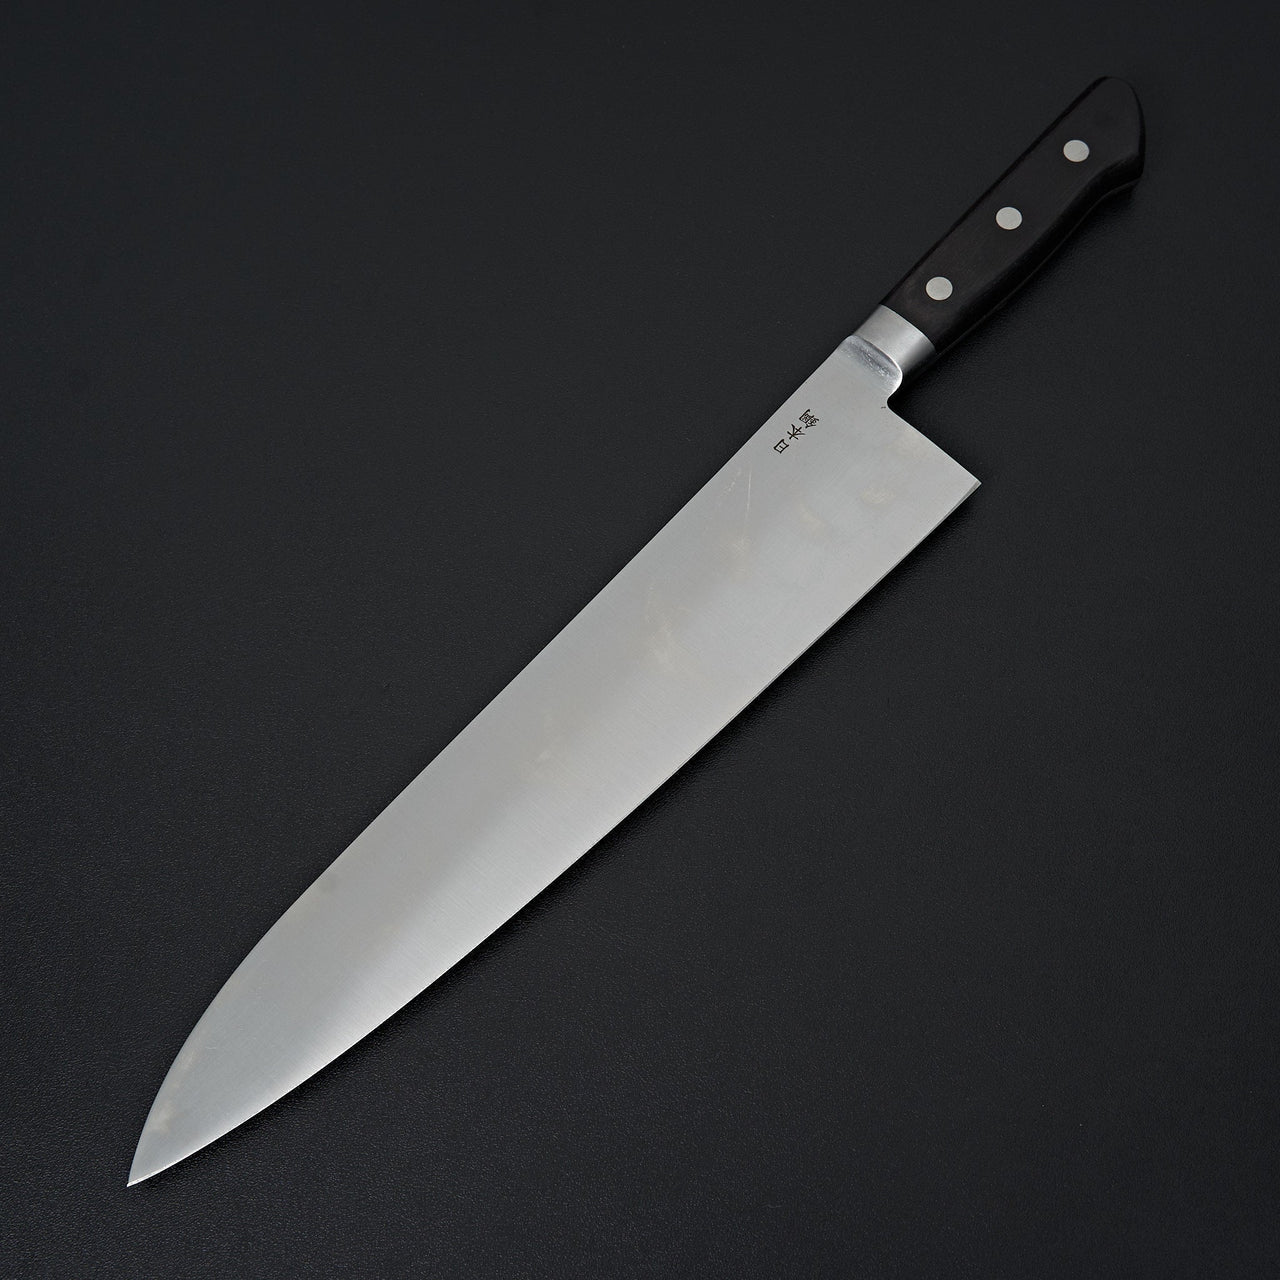 Sakai Kikumori Nihonko Carbon Gyuto 300mm-Knife-Sakai Kikumori-Carbon Knife Co